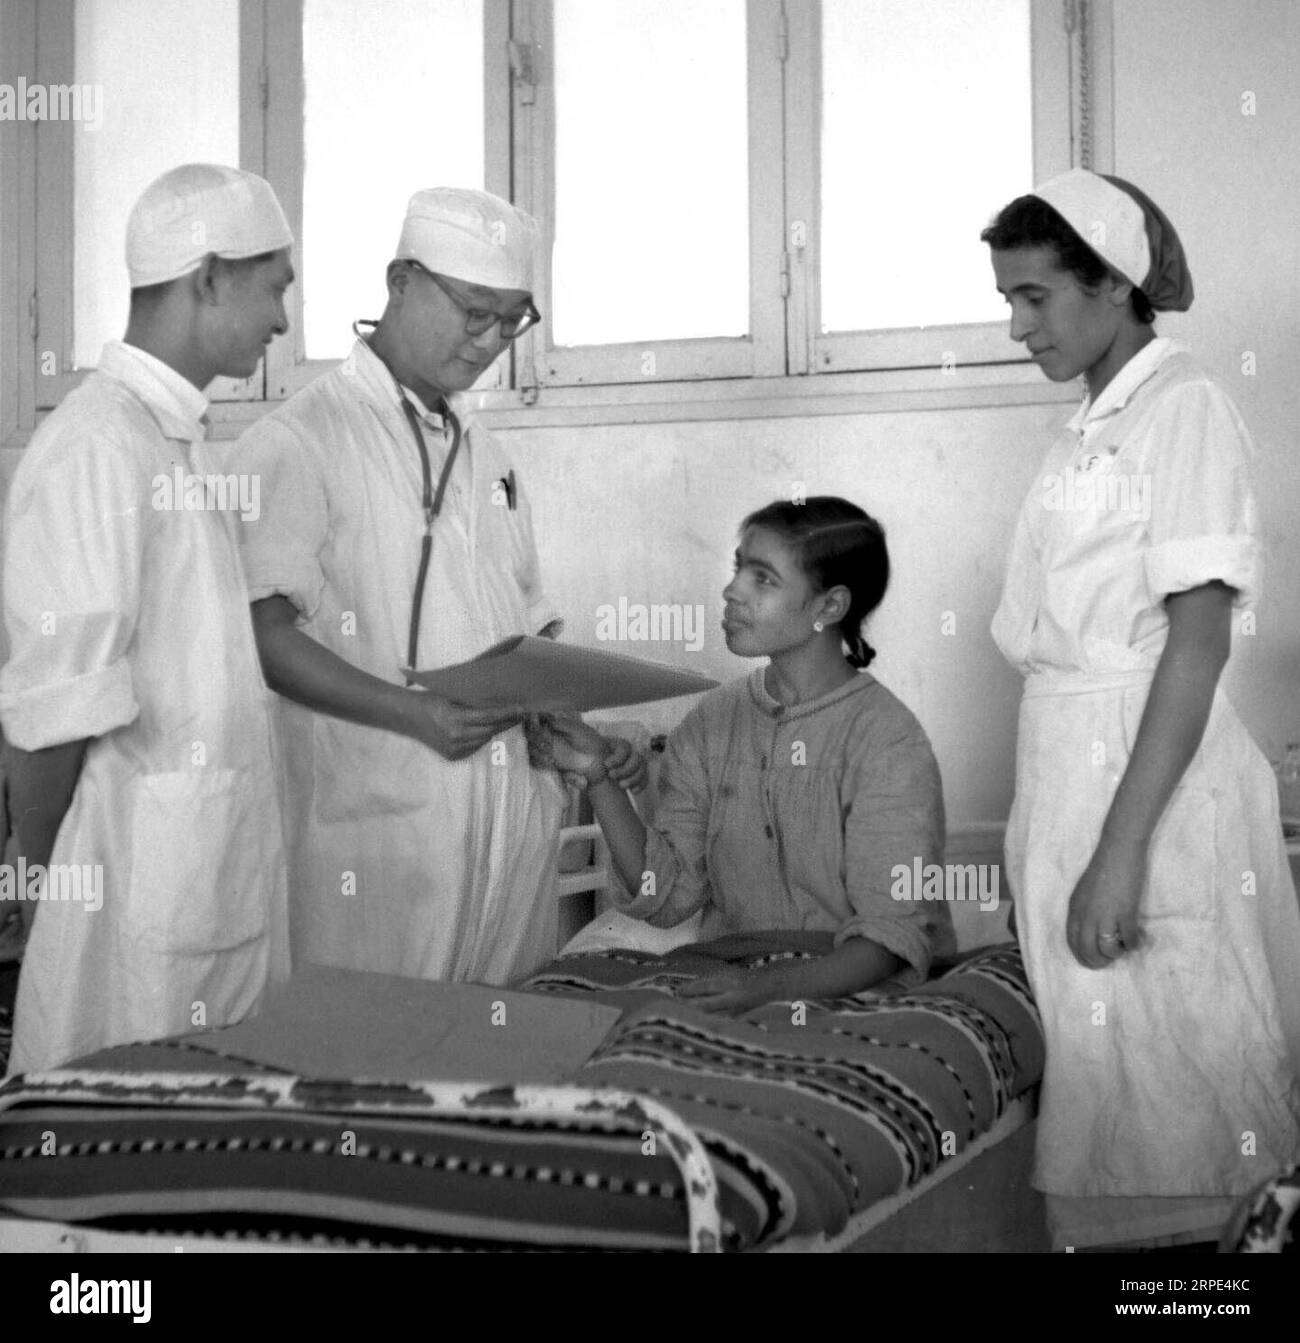 (190818) -- NAIROBI, 18 août 2019 -- sur cette photo, un médecin chinois (2e L) diagnostique un patient dans un hôpital de Saida, Algérie, le 24 février 1965. (Photo de Zhuo Shangzhi/Xinhua) titres de Xinhua : des décennies plus tard, les équipes médicales chinoises aident à ressusciter la santé publique en Afrique XinxHuashejizhe PUBLICATIONxNOTxINxCHN Banque D'Images